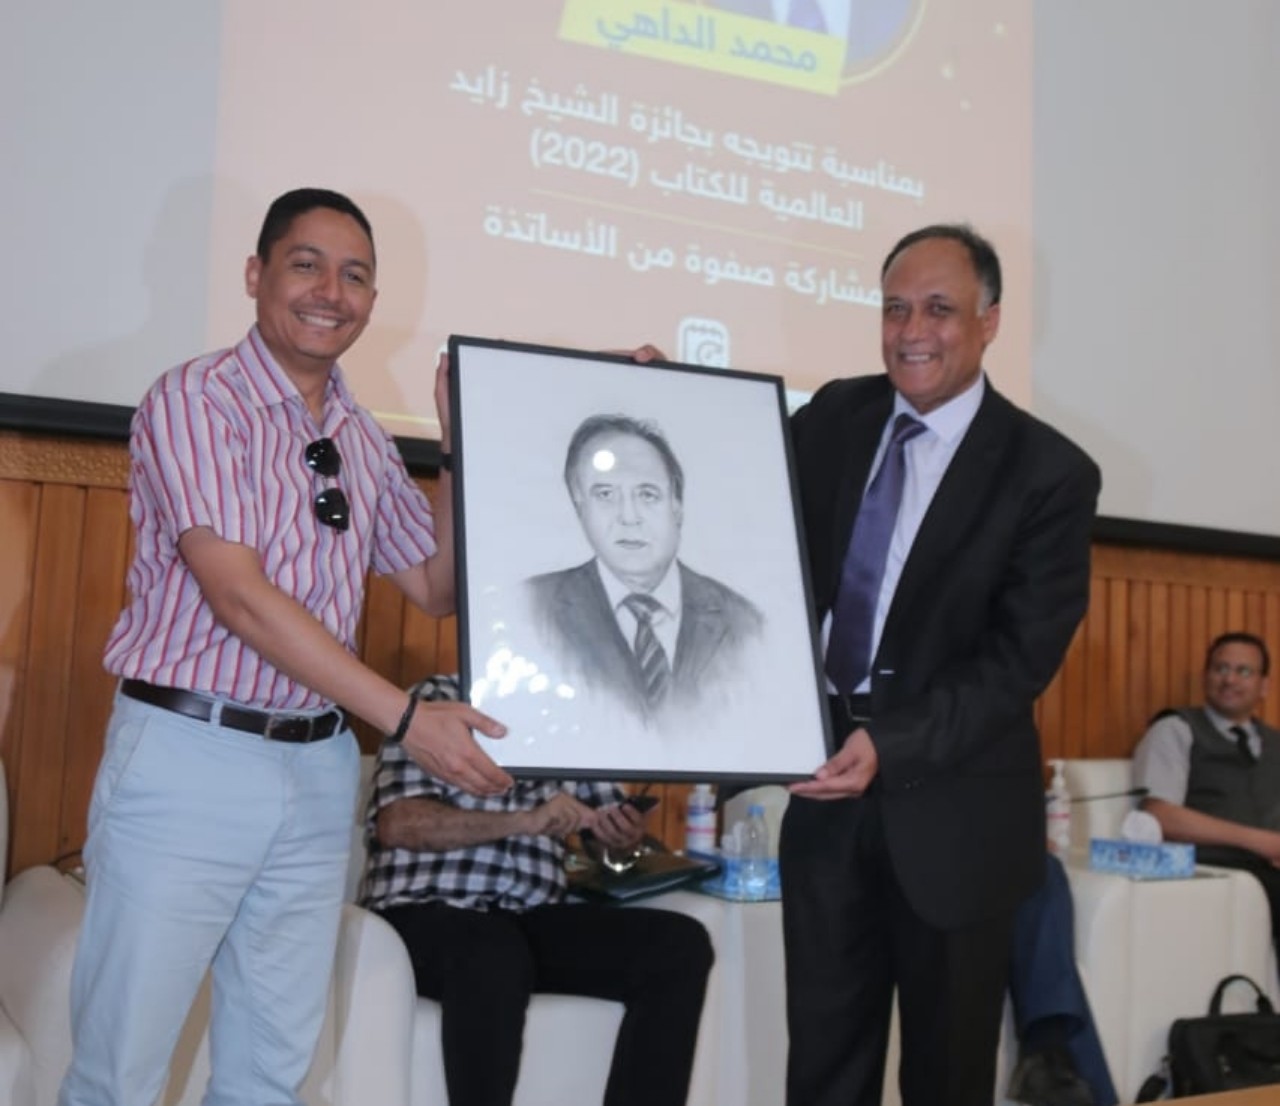 تكريم خاص لمحمد الداهي المتوج بجائزة الشيخ زايد للكتاب